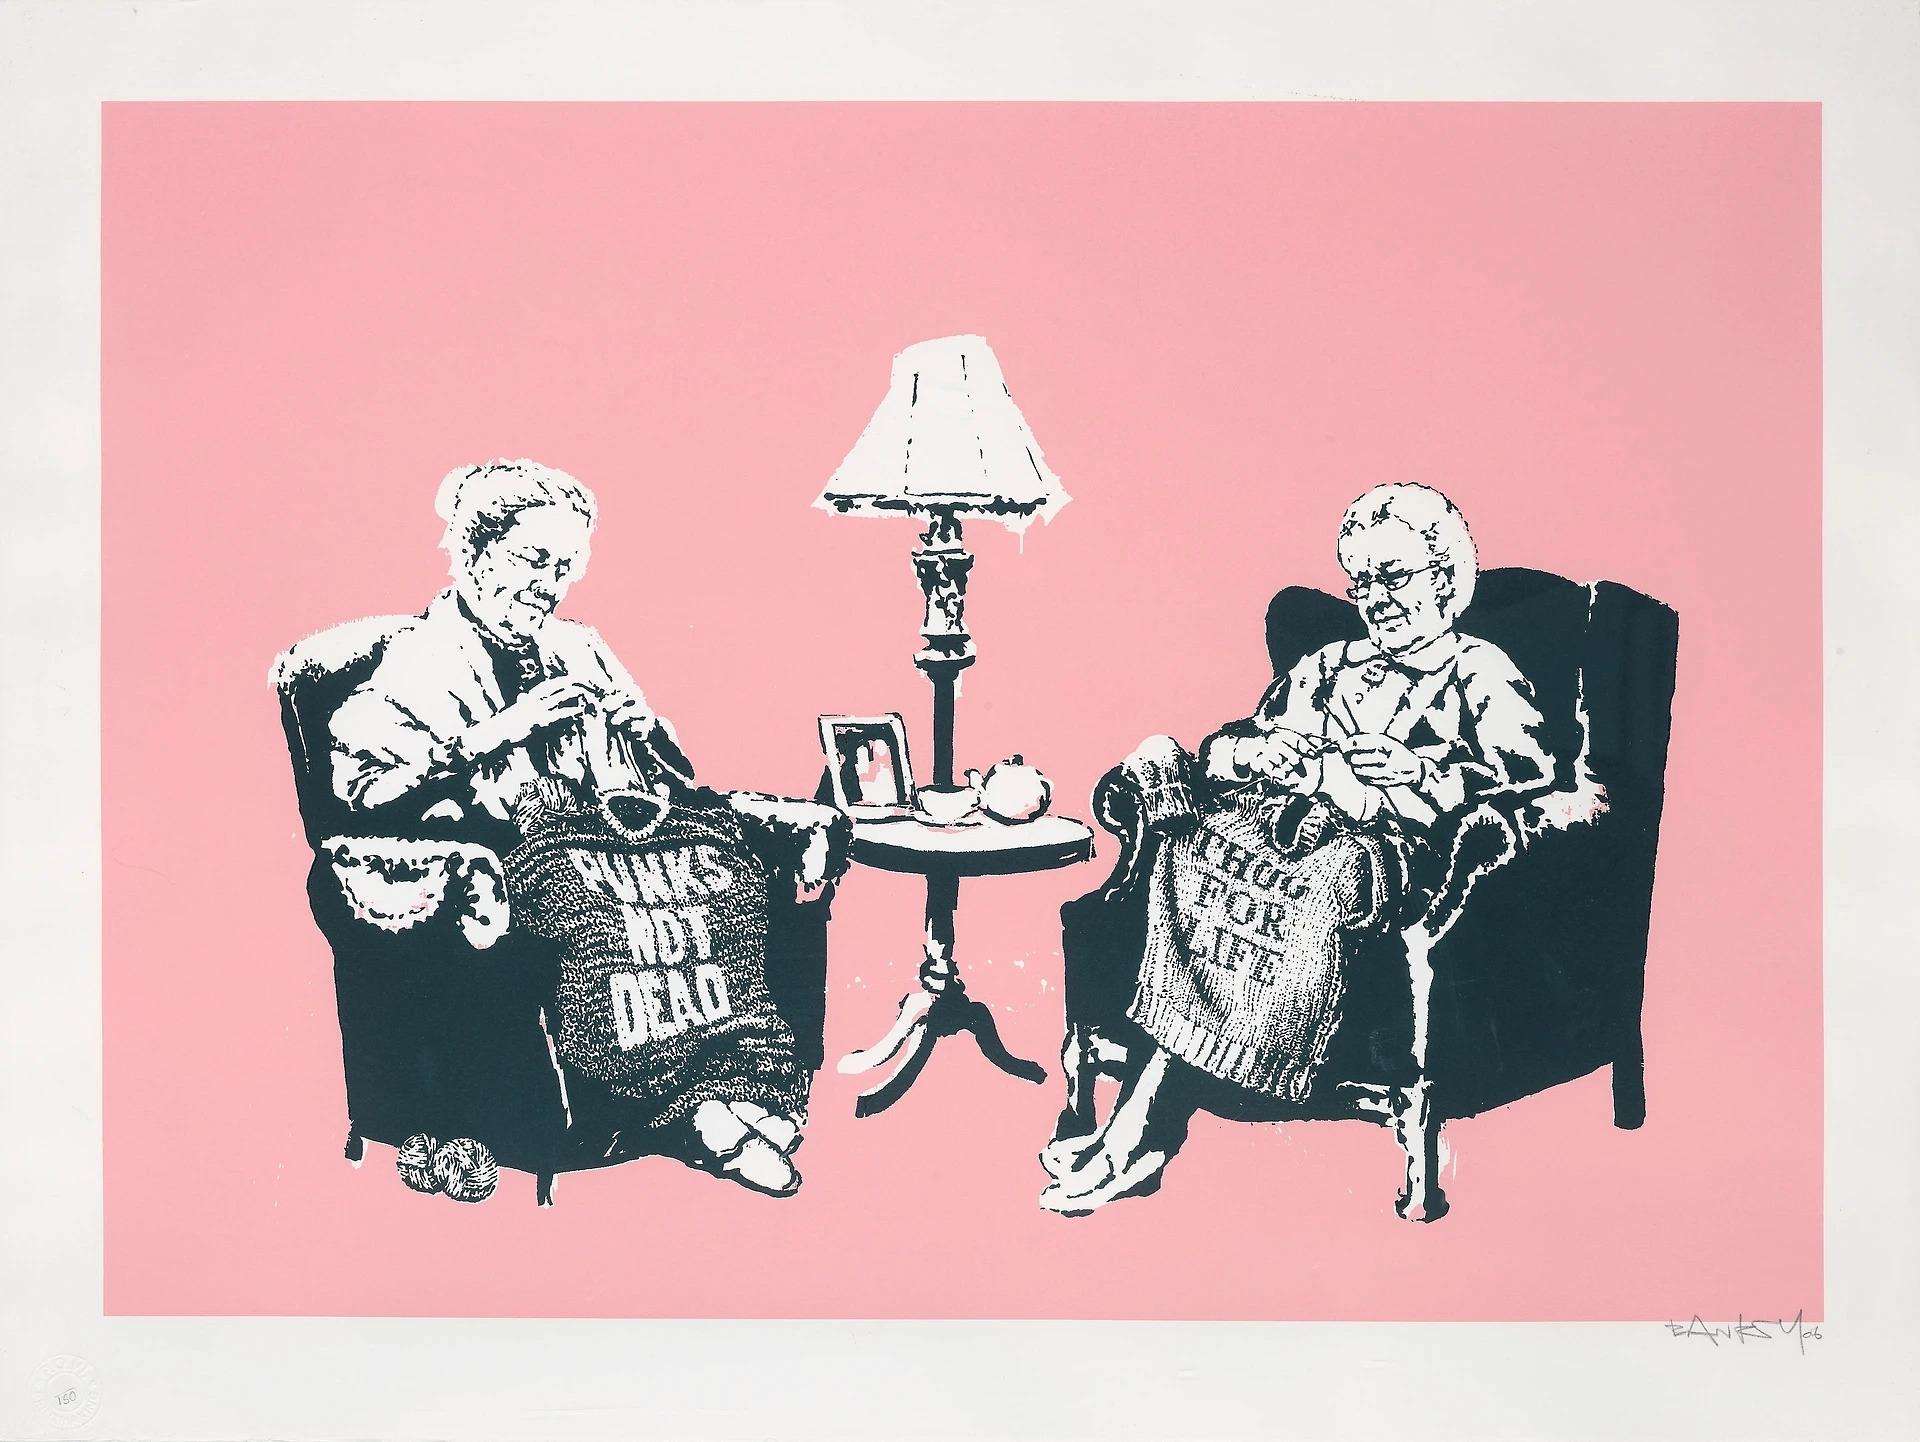 Grannies - Signed Print by Banksy 2006 - MyArtBroker